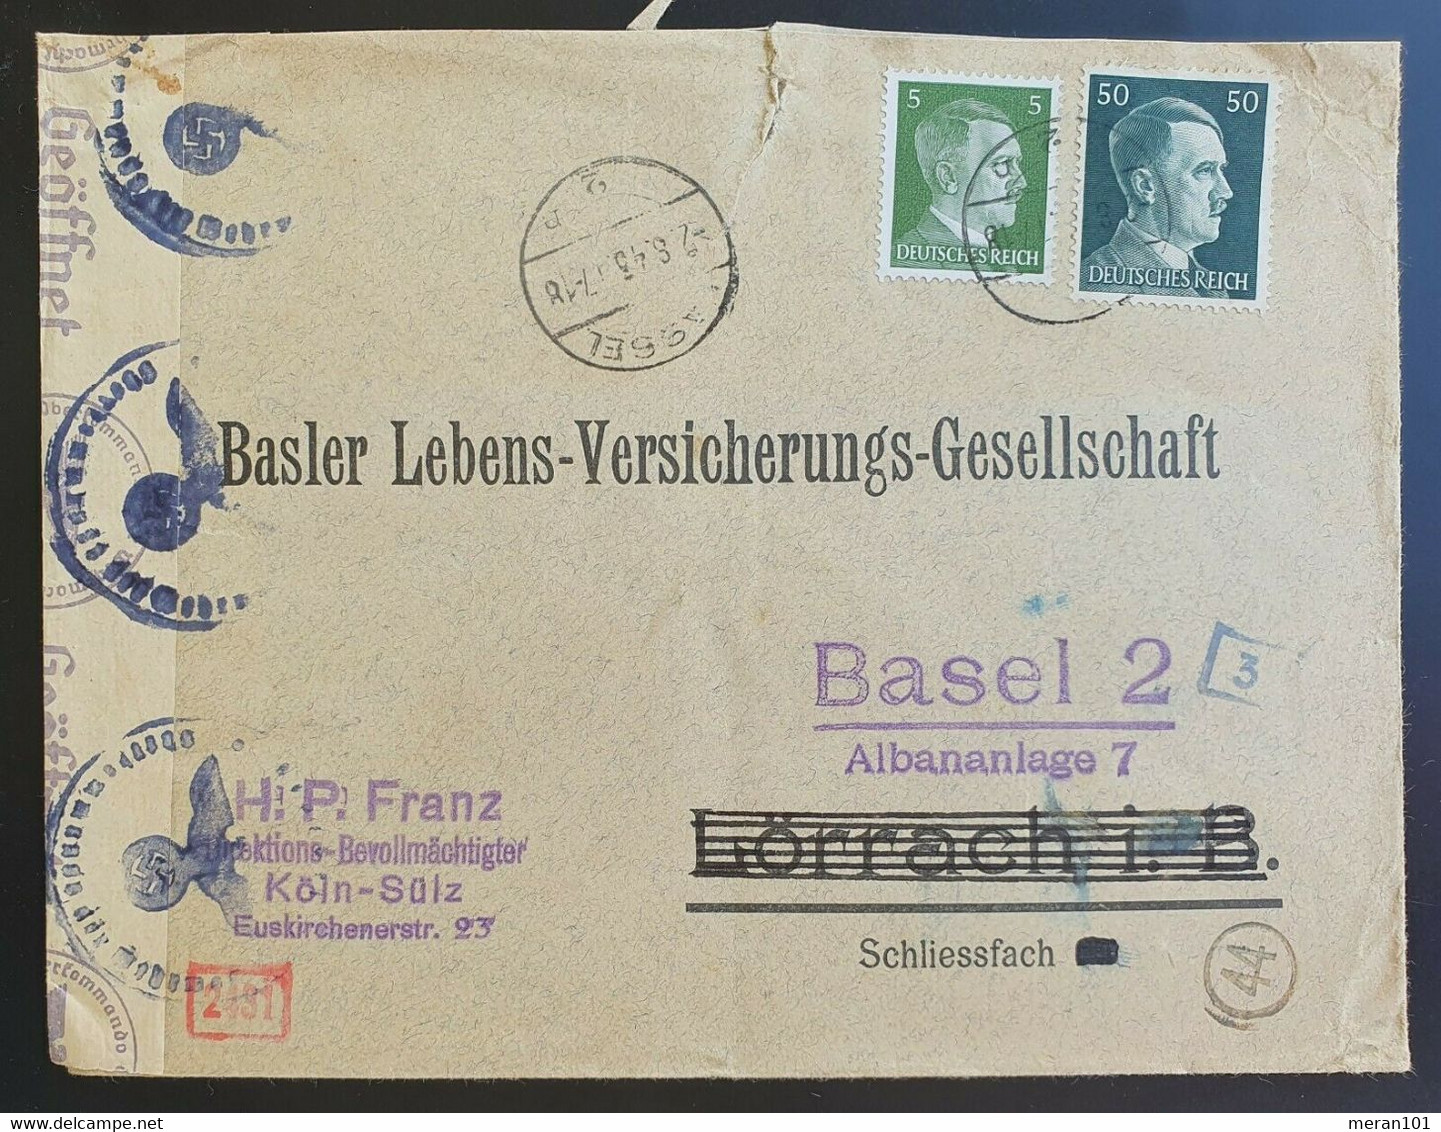 Deutsches Reich 1943, Ausland Zensur Bedarfsbrief - Basler Versicherung - Covers & Documents